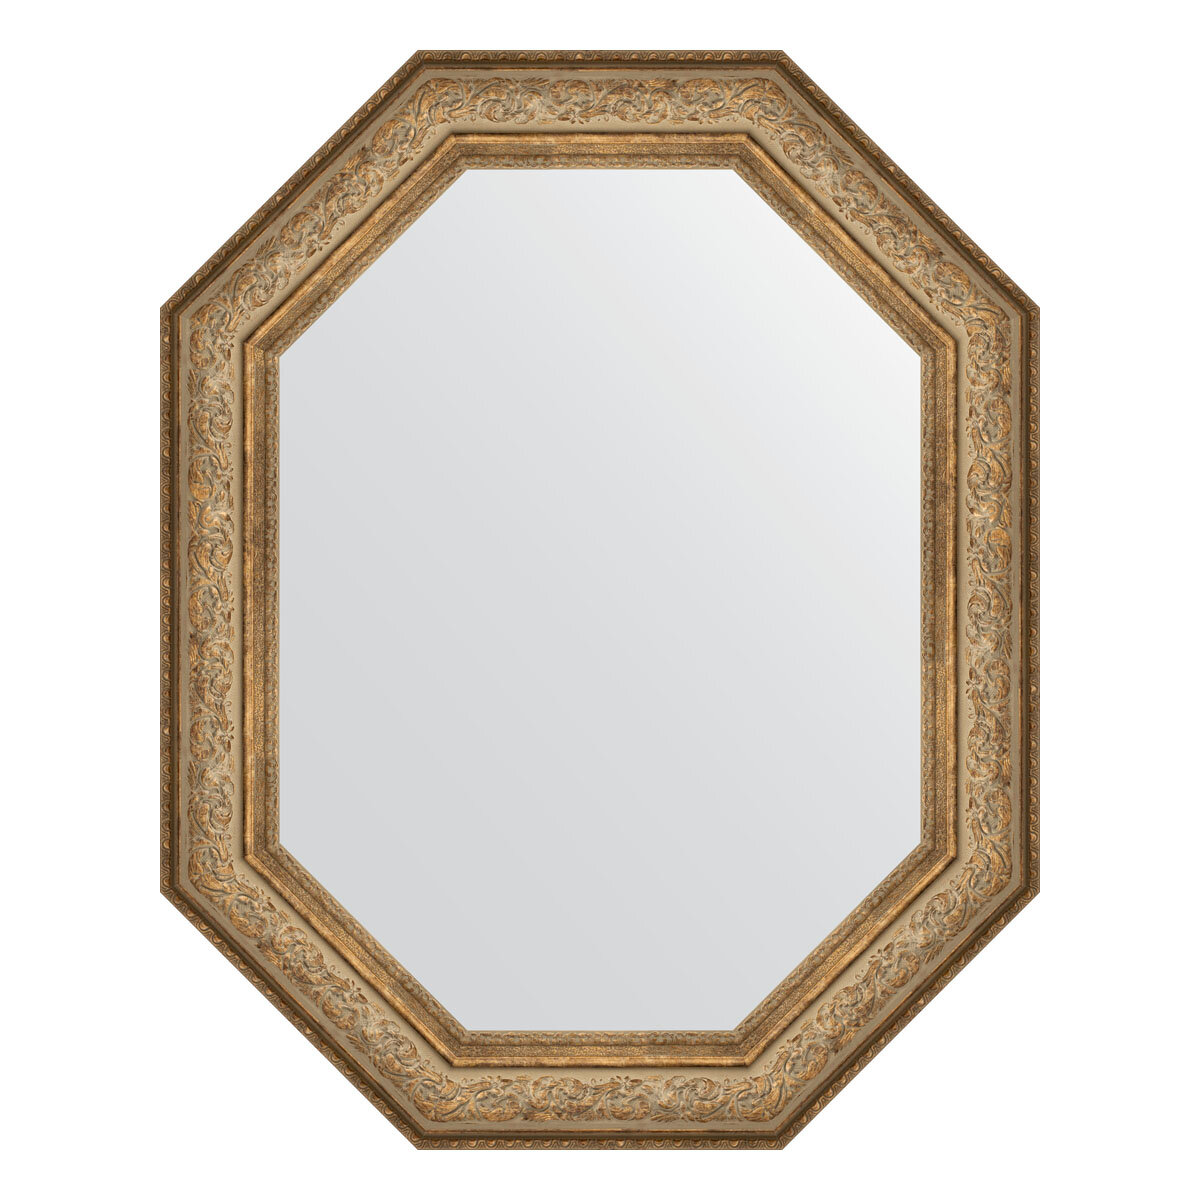 Зеркало настенное Polygon EVOFORM в багетной раме виньетка античная бронза, 80х100 см, для гостиной, прихожей, спальни и ванной комнаты, BY 7252